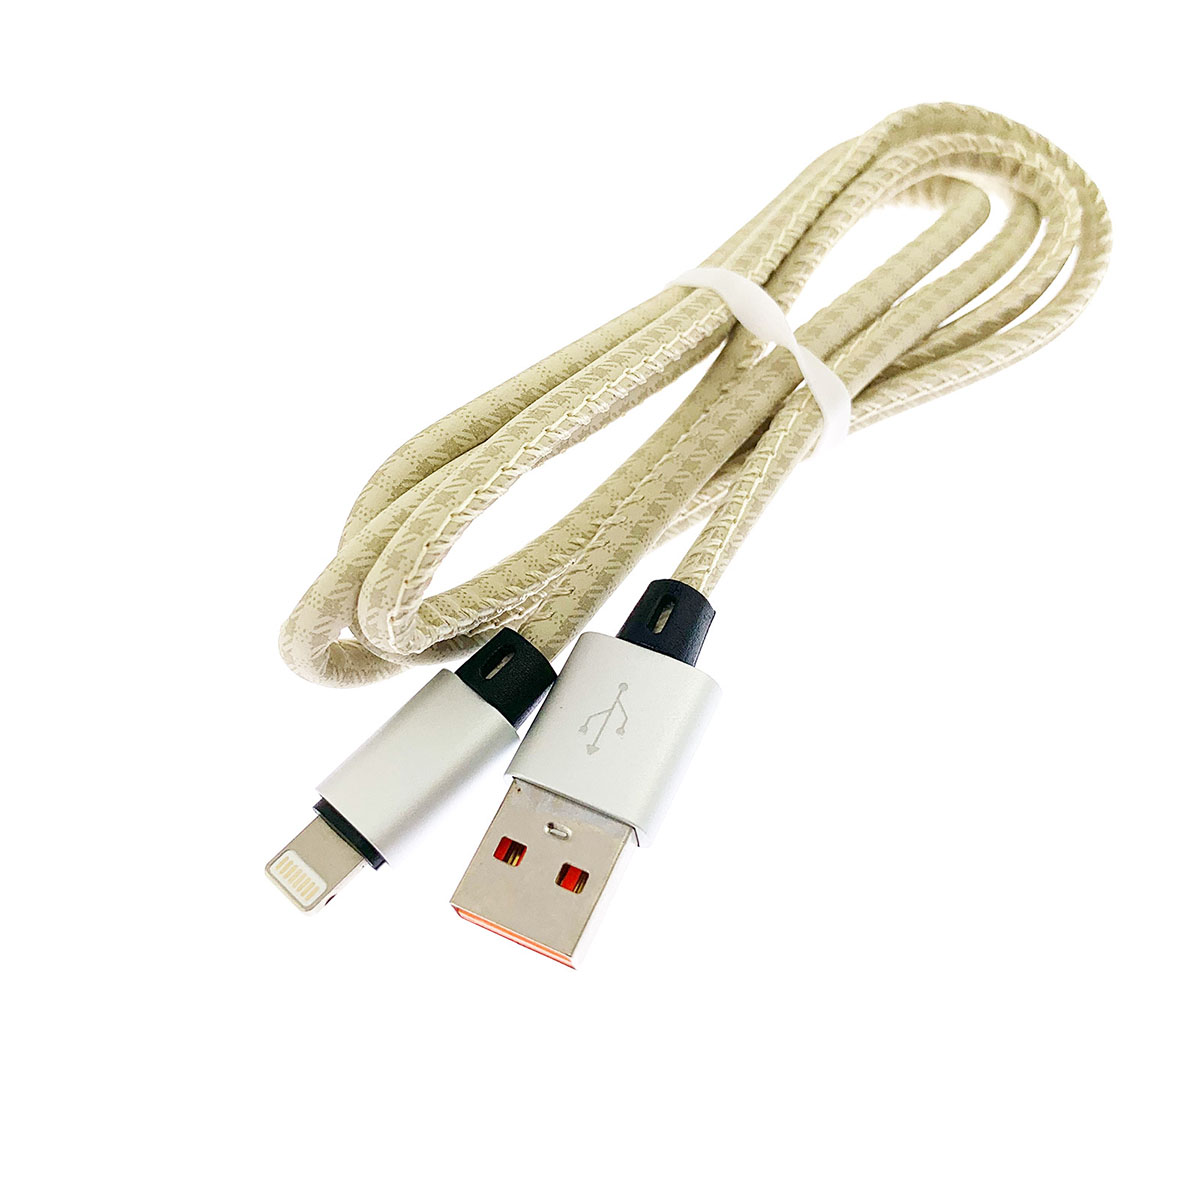 USB Дата кабель A88 для заряда и синхронизации, тип APPLE Lightning 8-pin, в армированной под кожу оболочке, длина 1 метр, цвет золотистый.